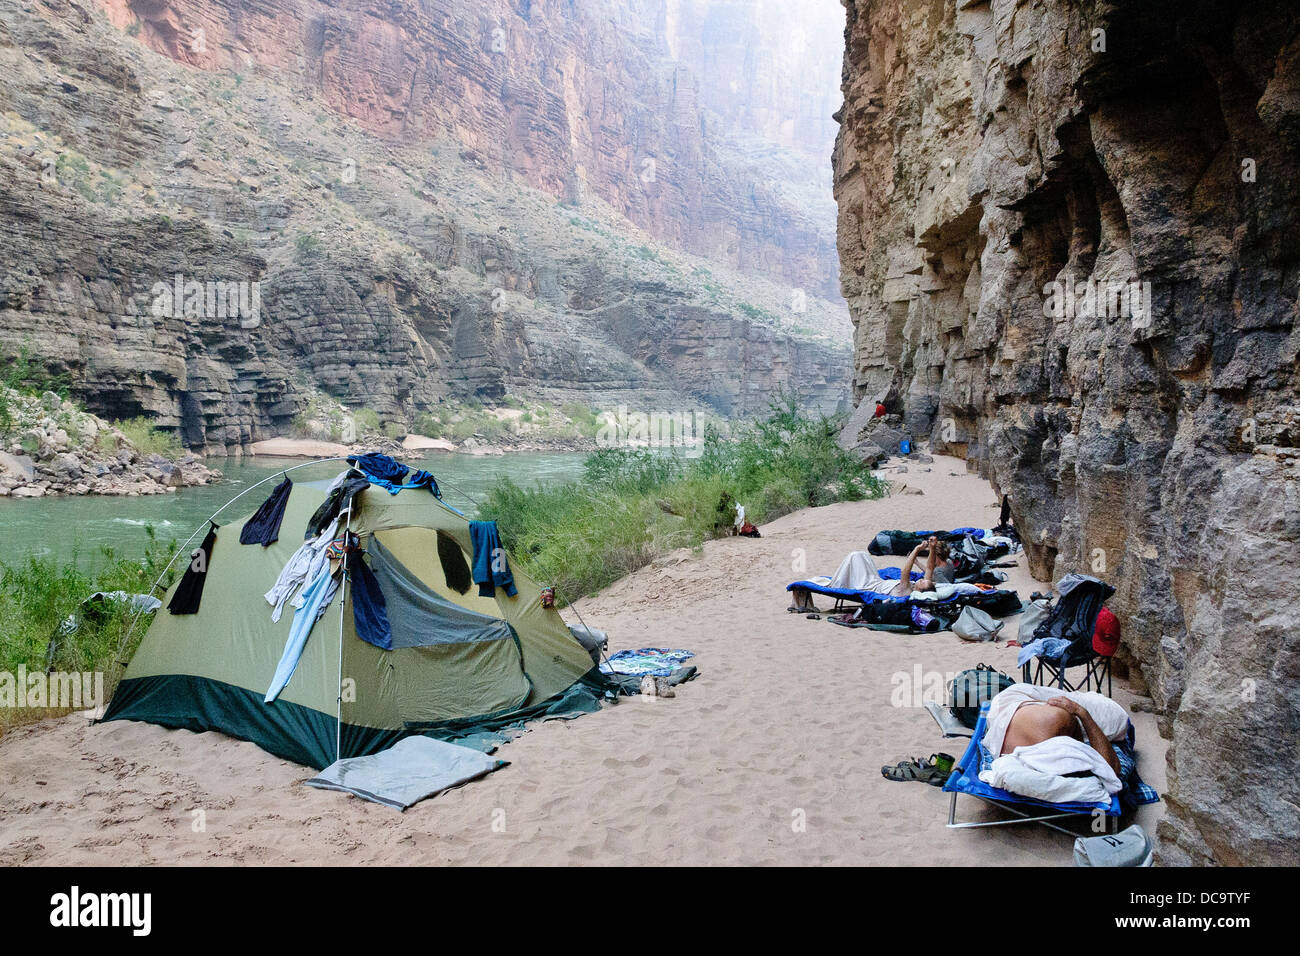 Le Parc National du Grand Canyon, Arizona, USA. Camping le long de la rivière Colorado. Banque D'Images